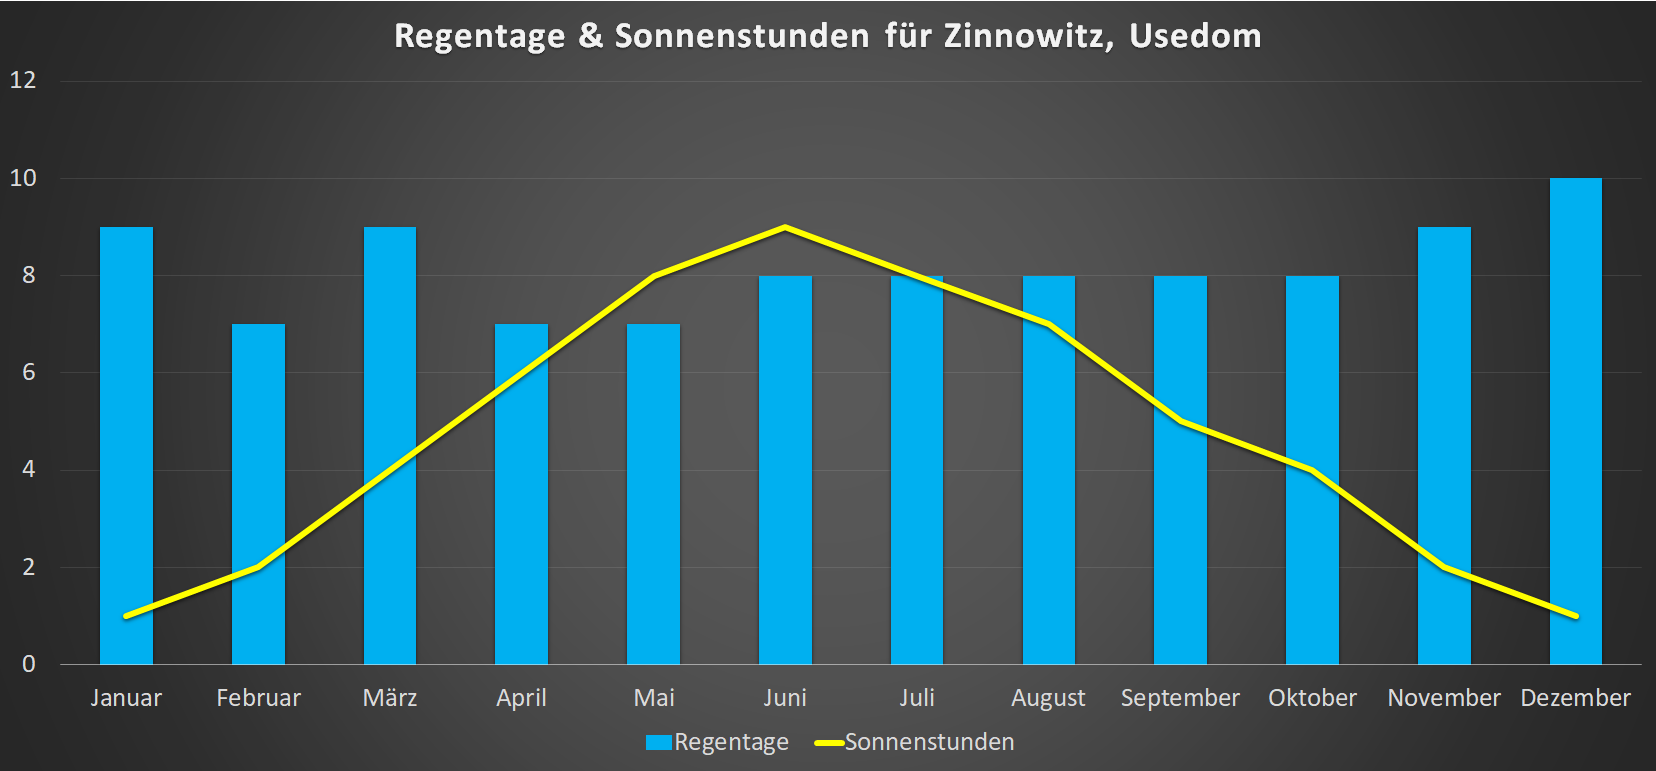 Regentage & Sonnenstunden für Zinnowitz im Jahresverlauf